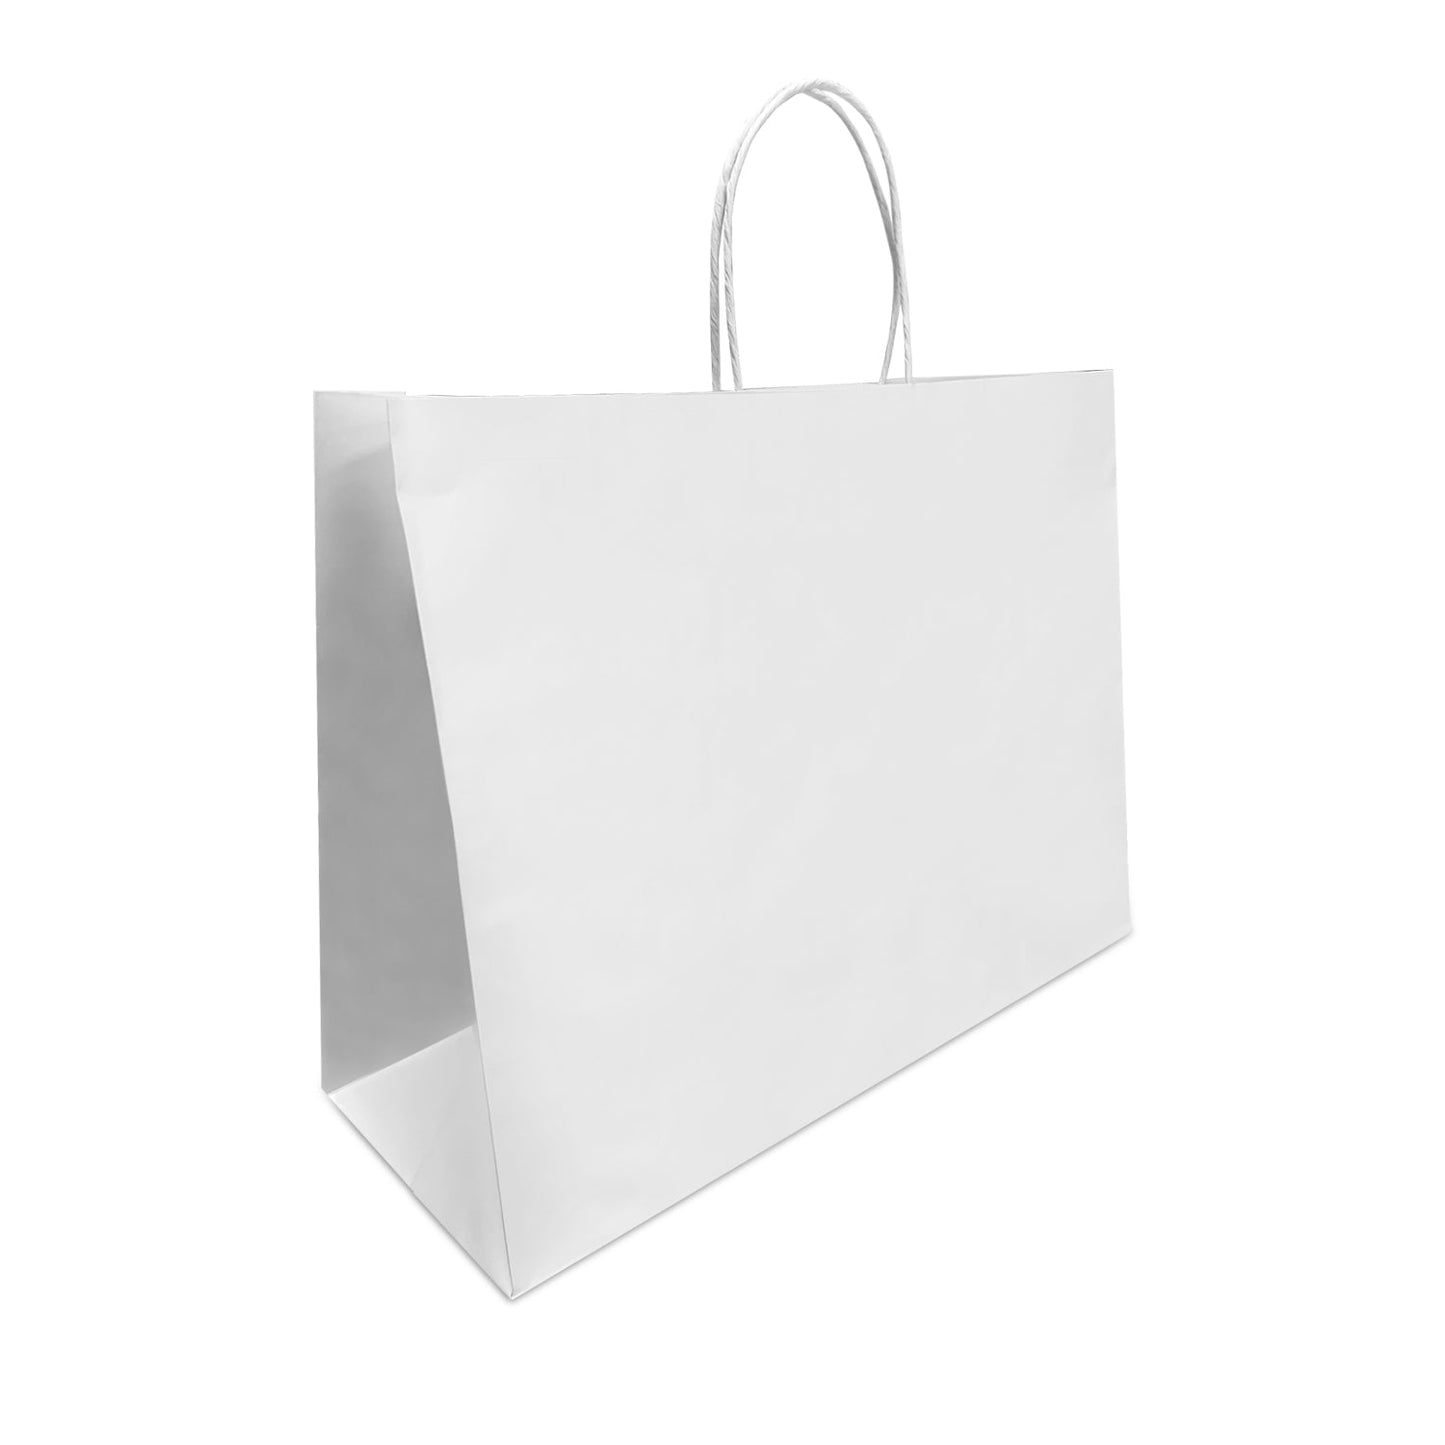 Vogue 16x6x12 White Paper Bags Twisted Handles; $1.15/pc, 50pcs/bundle, sold by bundle